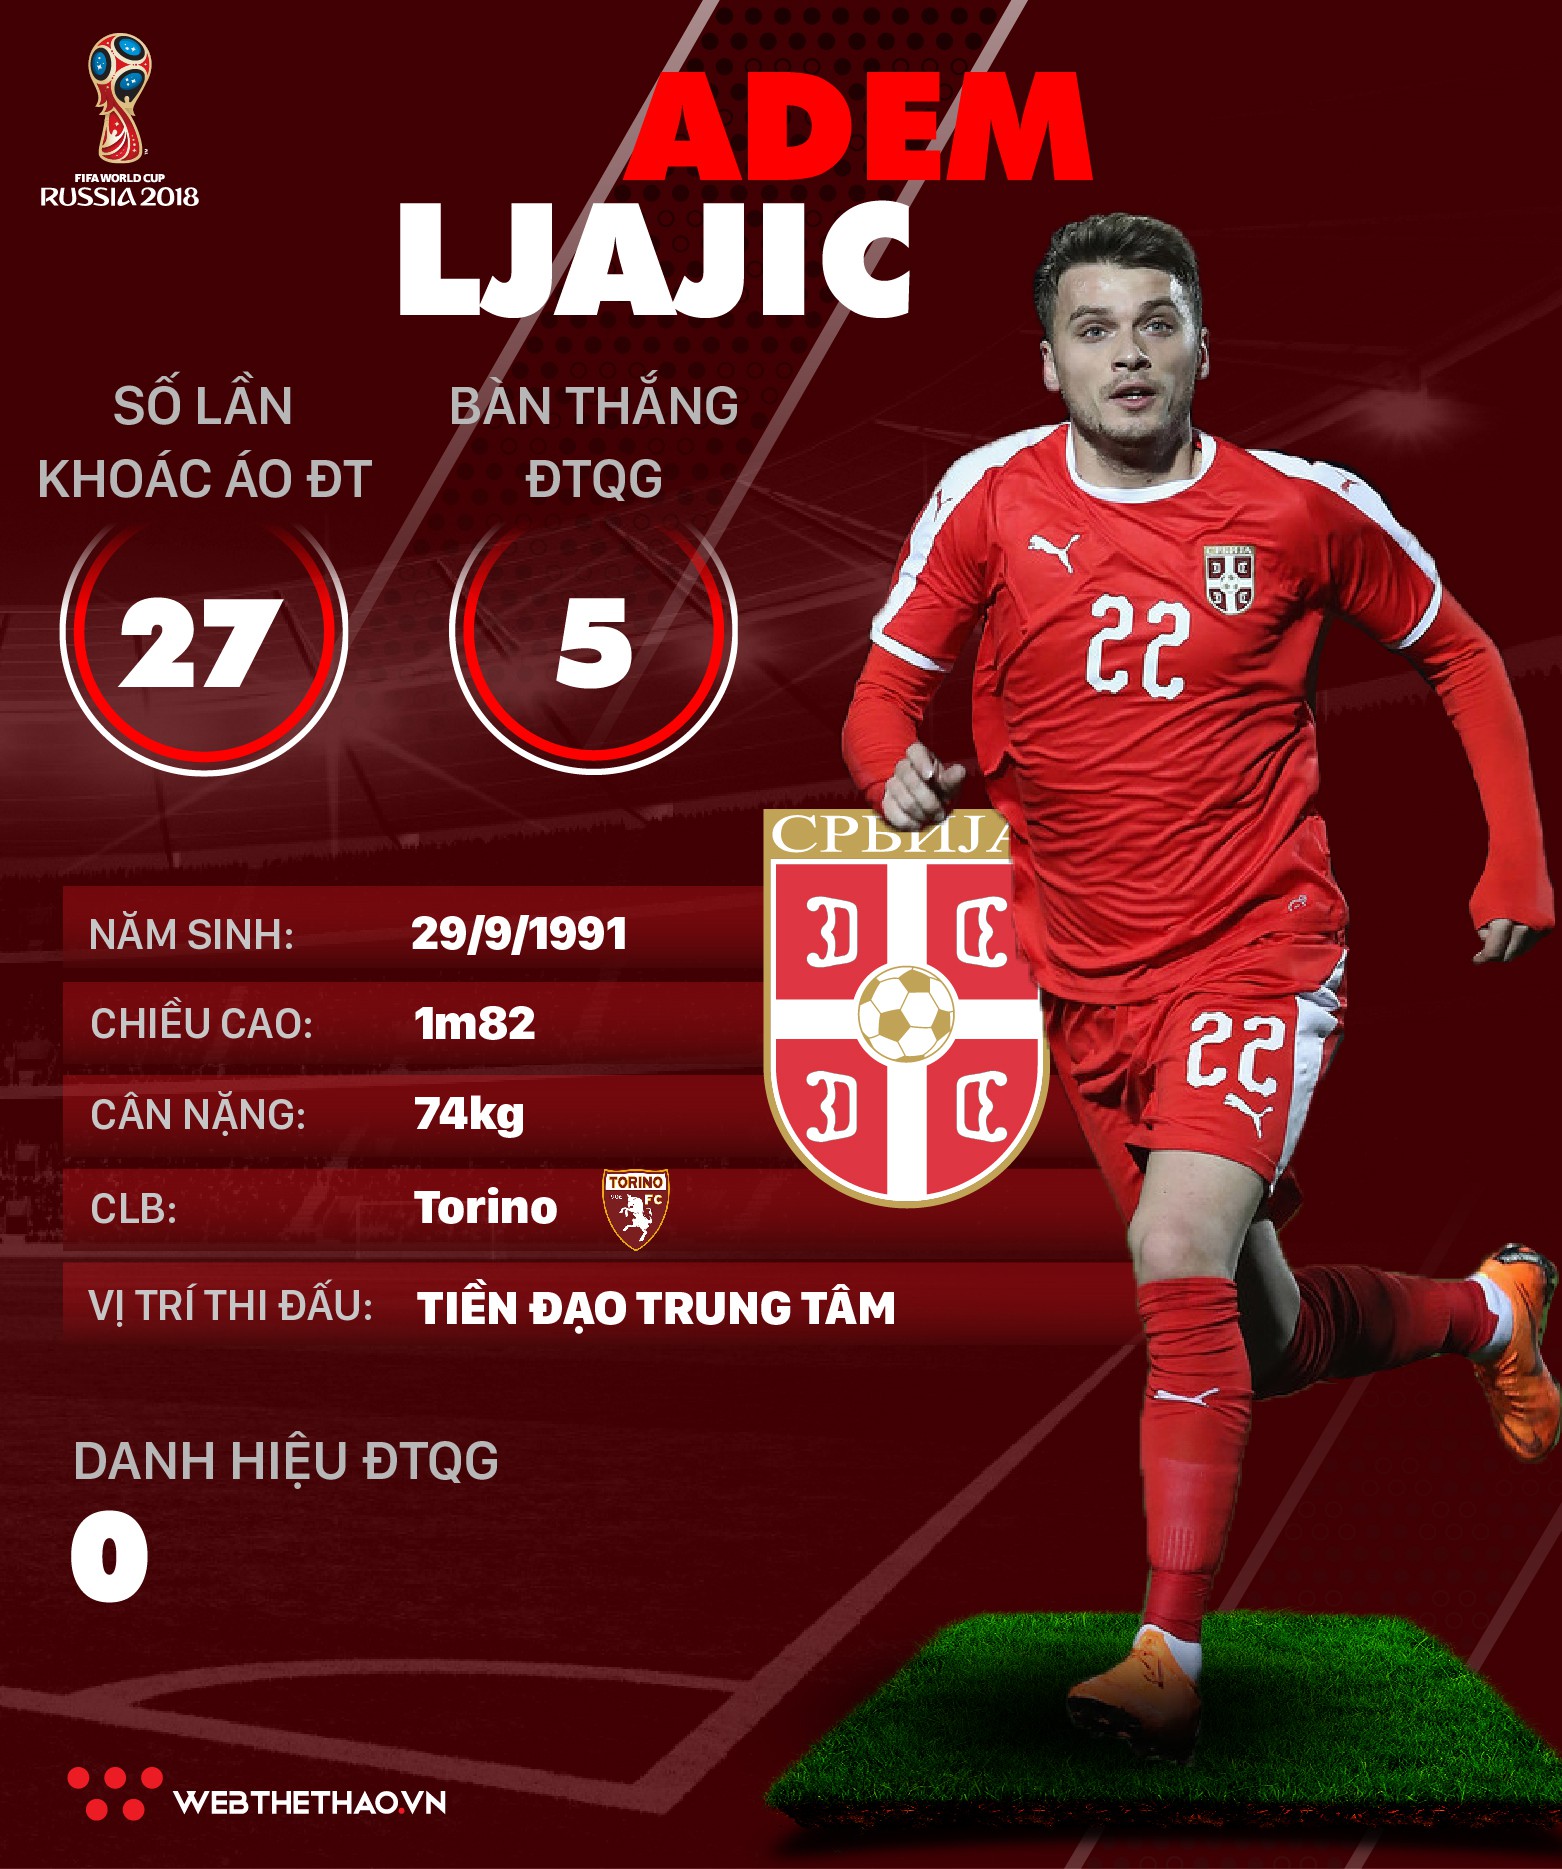 Thông tin cầu thủ Adem Ljajic của ĐT Serbia dự World Cup 2018 - Ảnh 1.